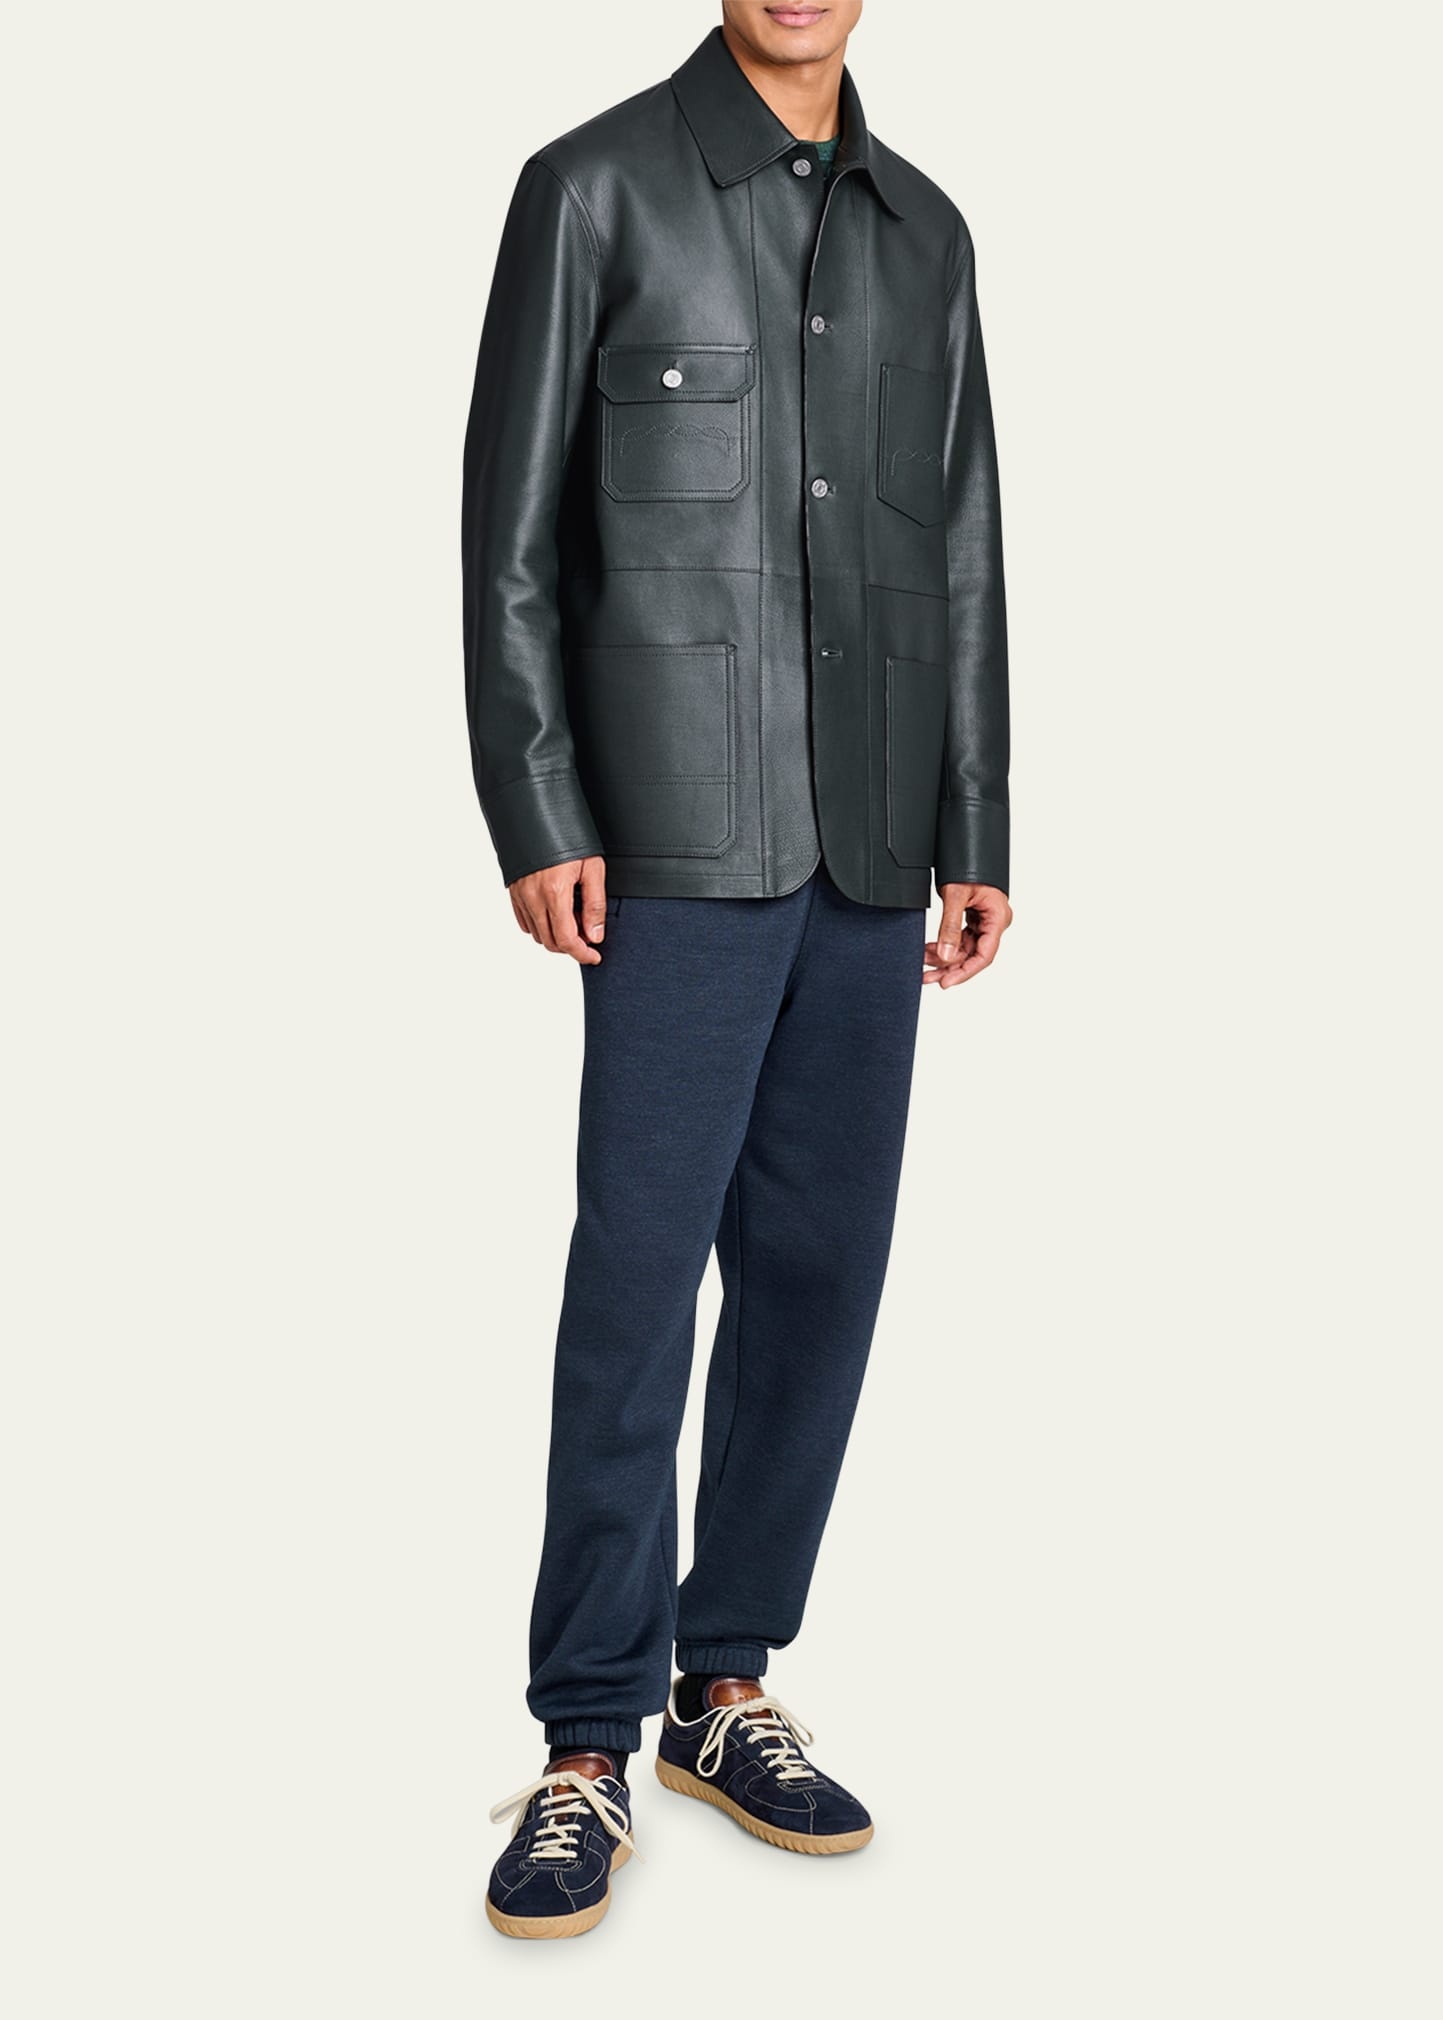 Men's Leather 4-Pocket Chore Jacket - 2